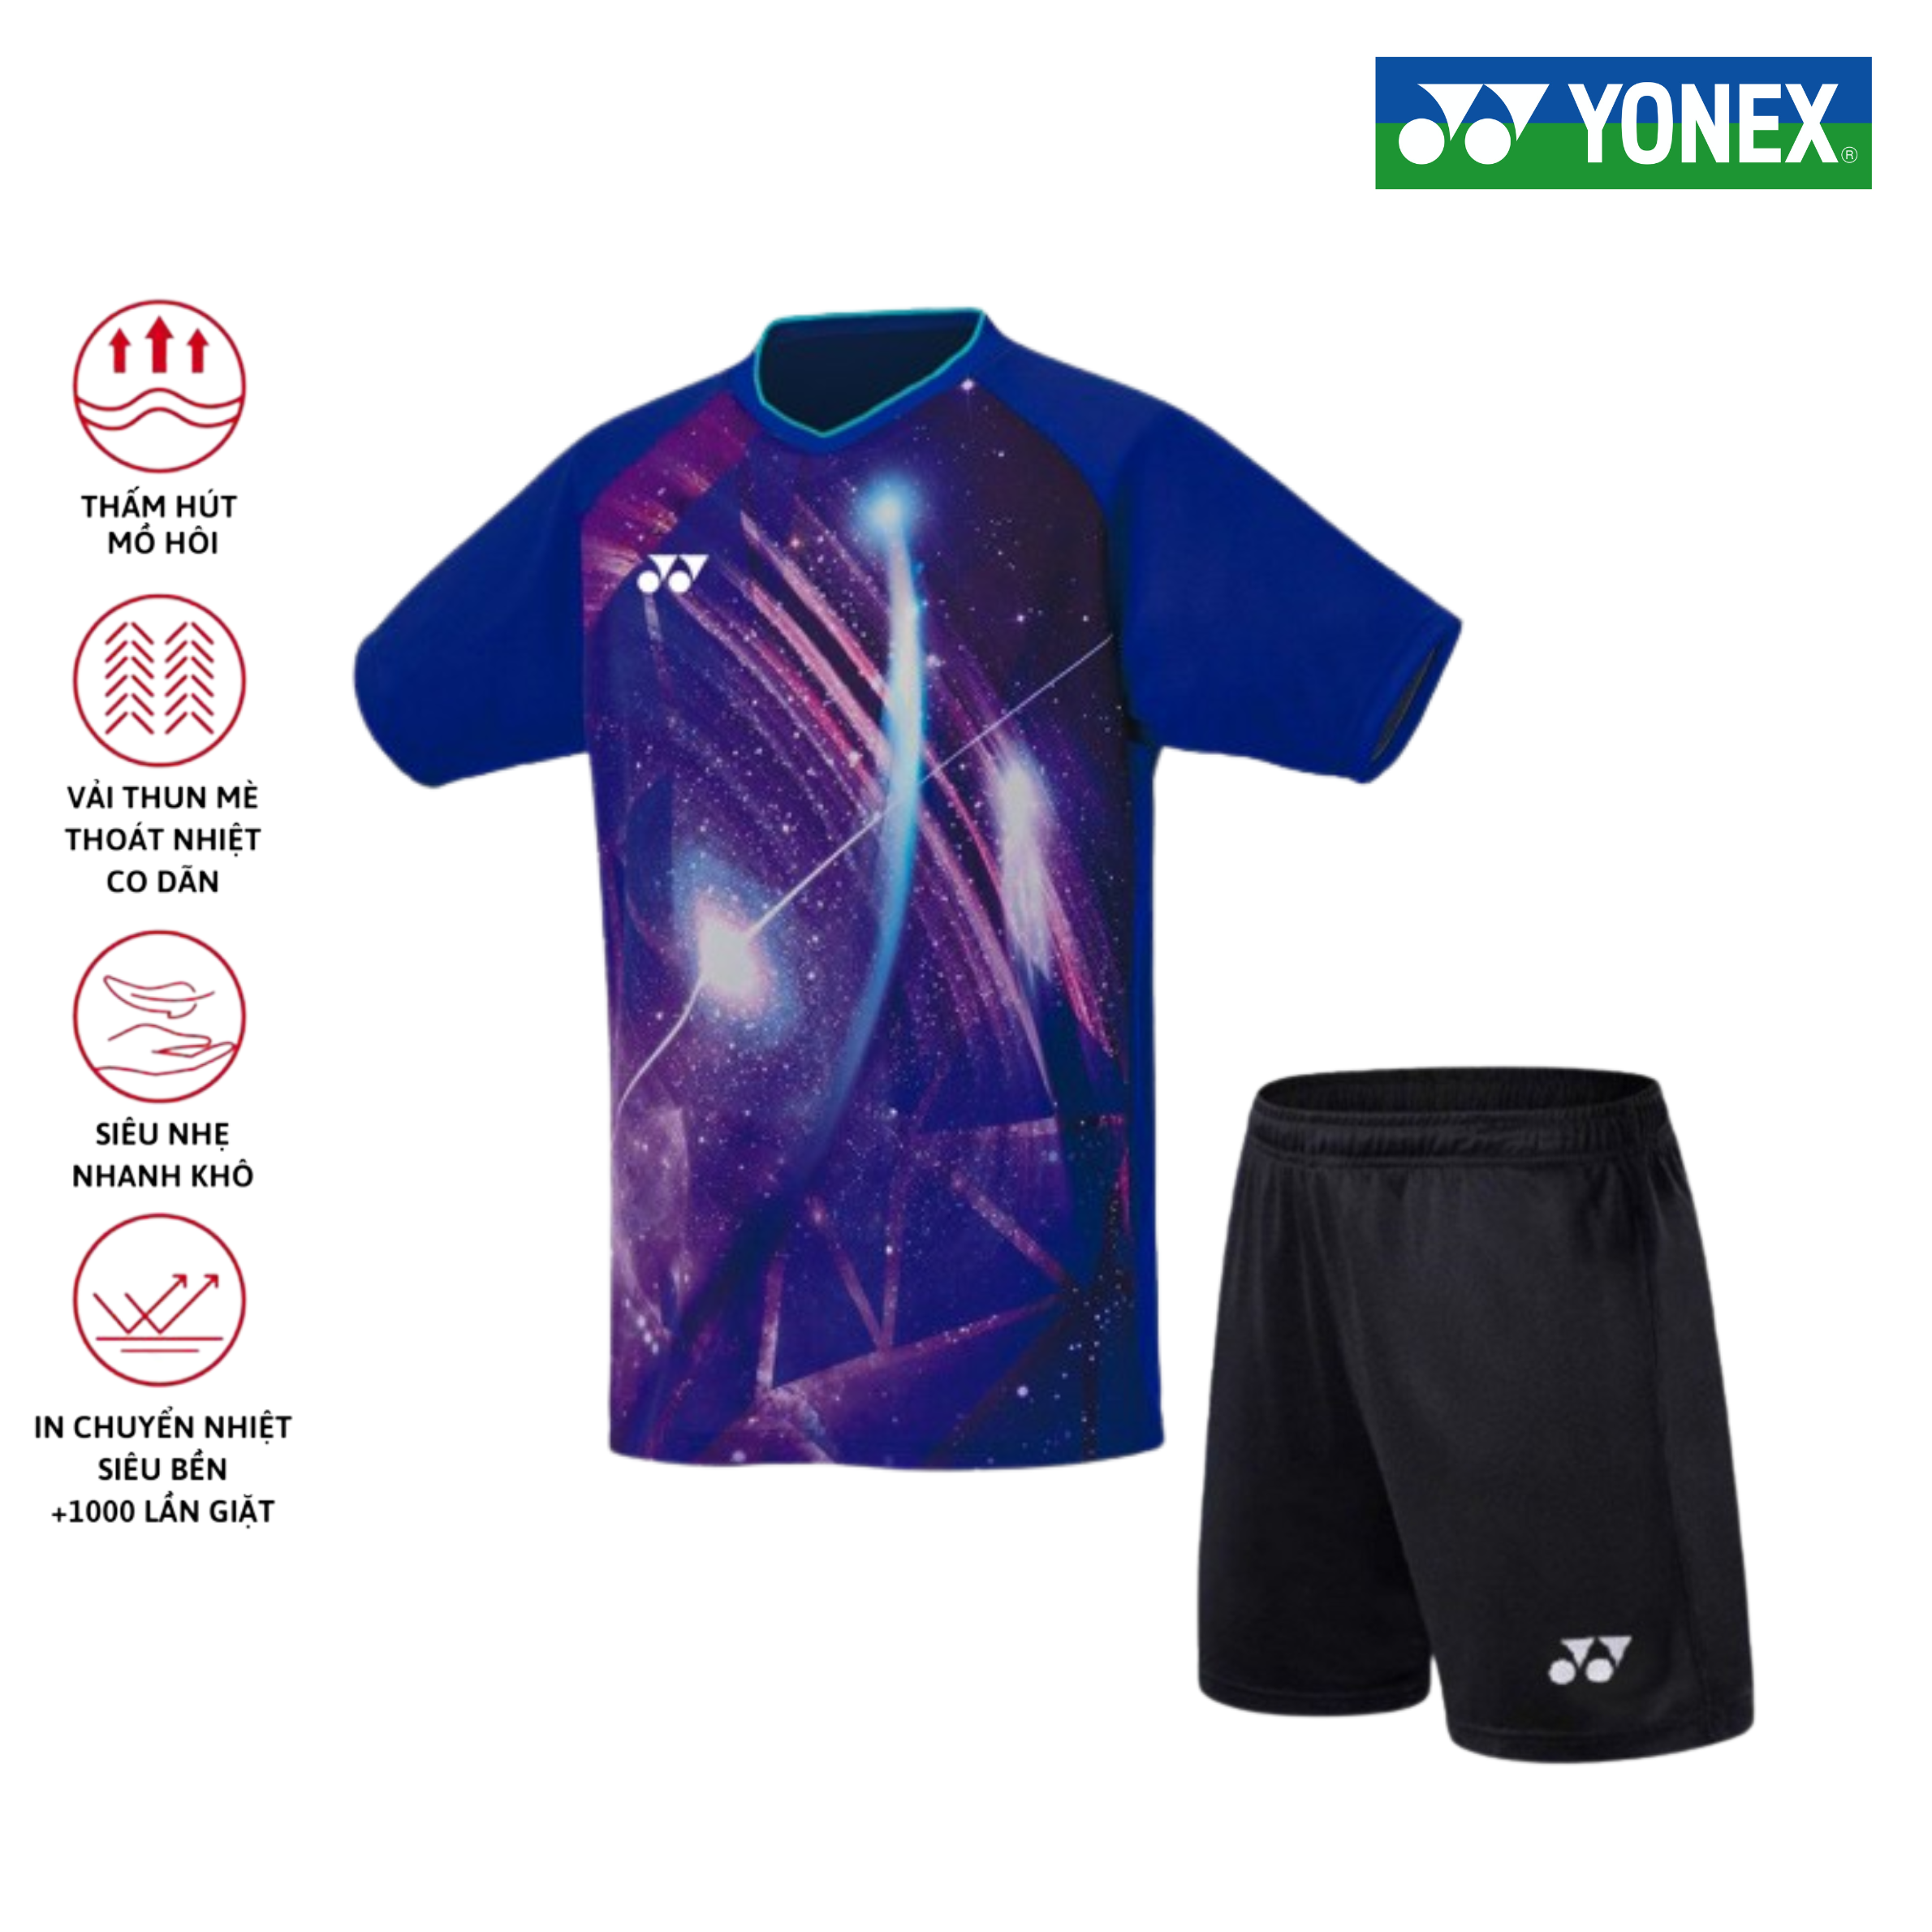 Áo cầu lông, quần cầu lông Yonex chuyên nghiệp mới nhất sử dụng tập luyện và thi đấu cầu lông A497